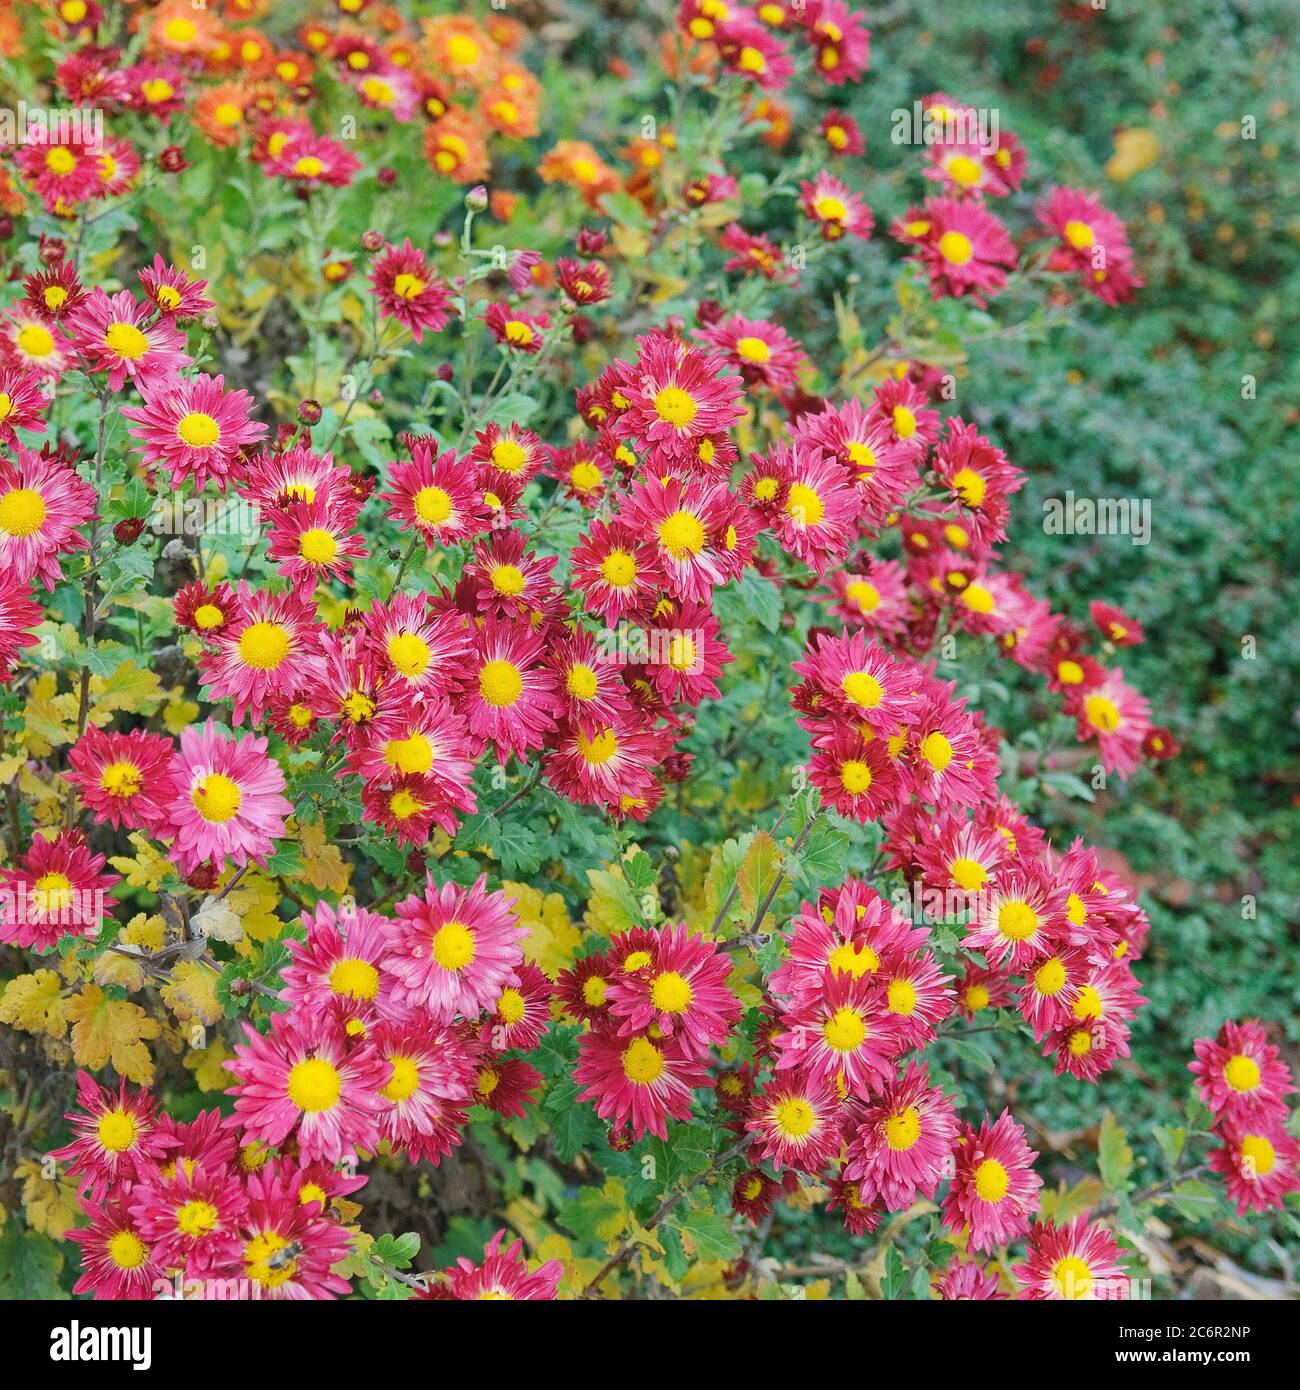 Chrysantheme Chrysanthemum Vesuv, Chrysanthemum Chrysanthemum Vesuvius Stock Photo